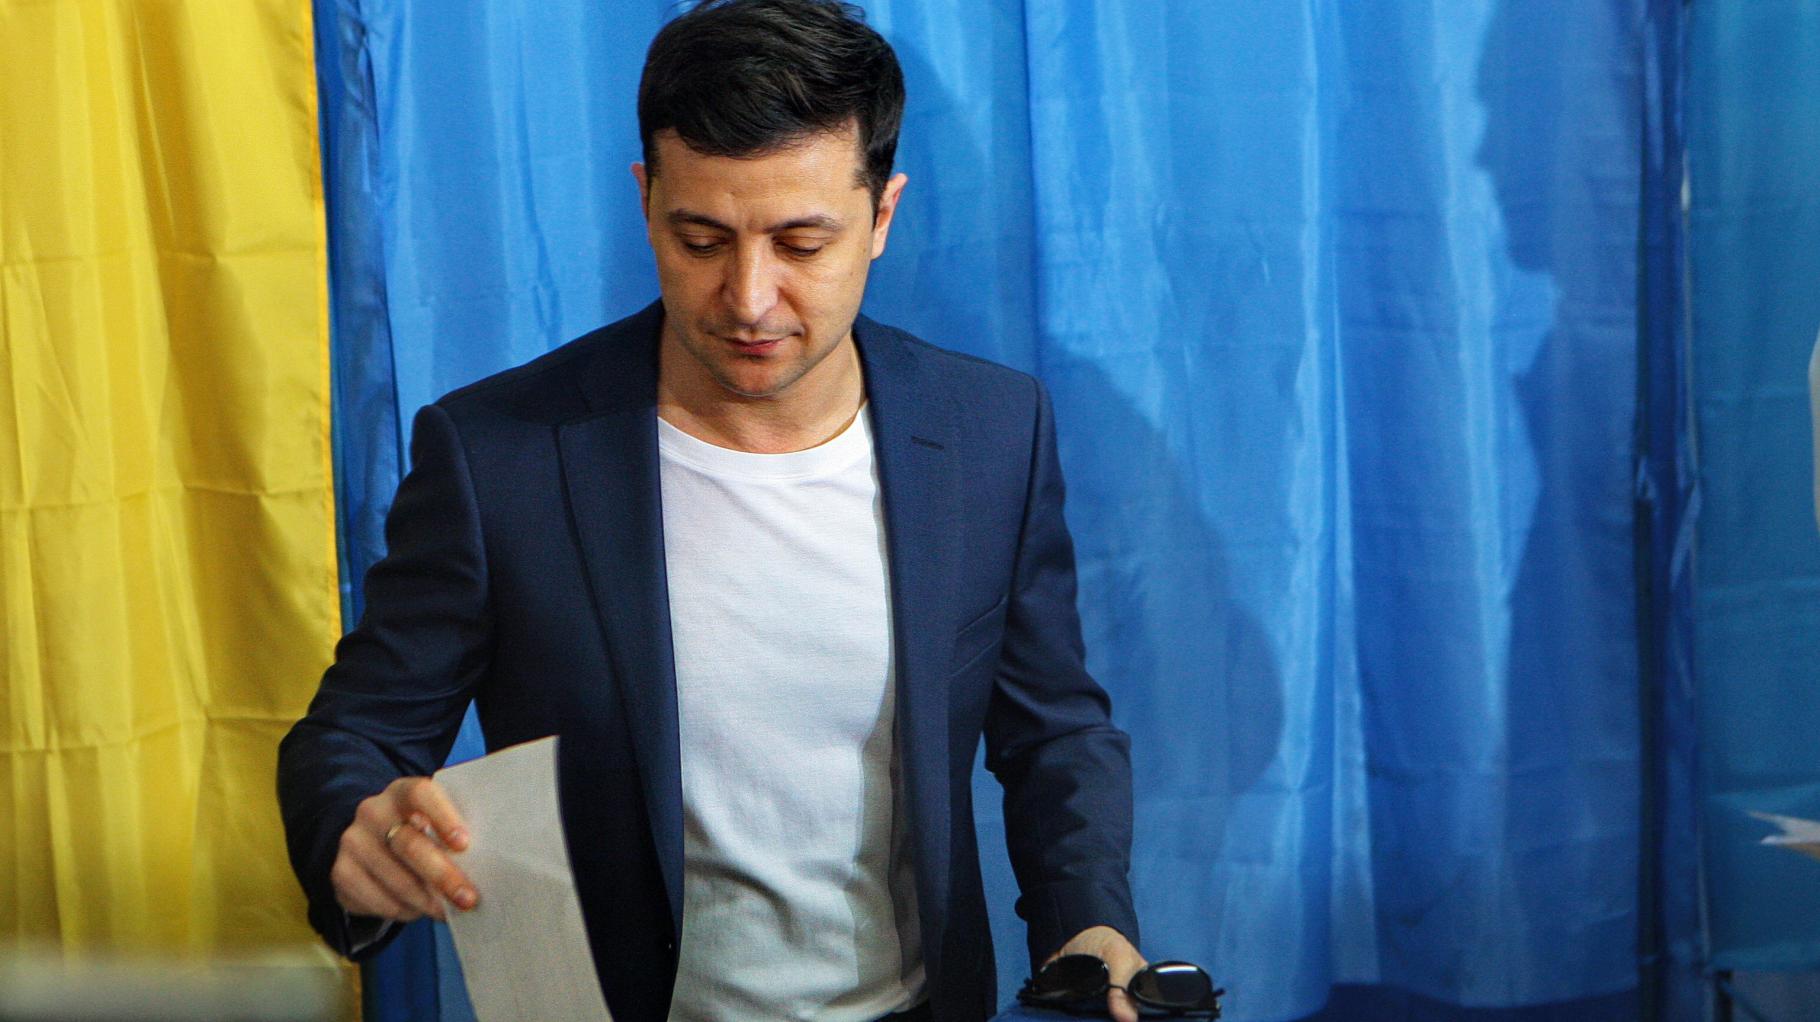 Ukrainer lehnen Wahlen während des Krieges mehrheitlich ab 